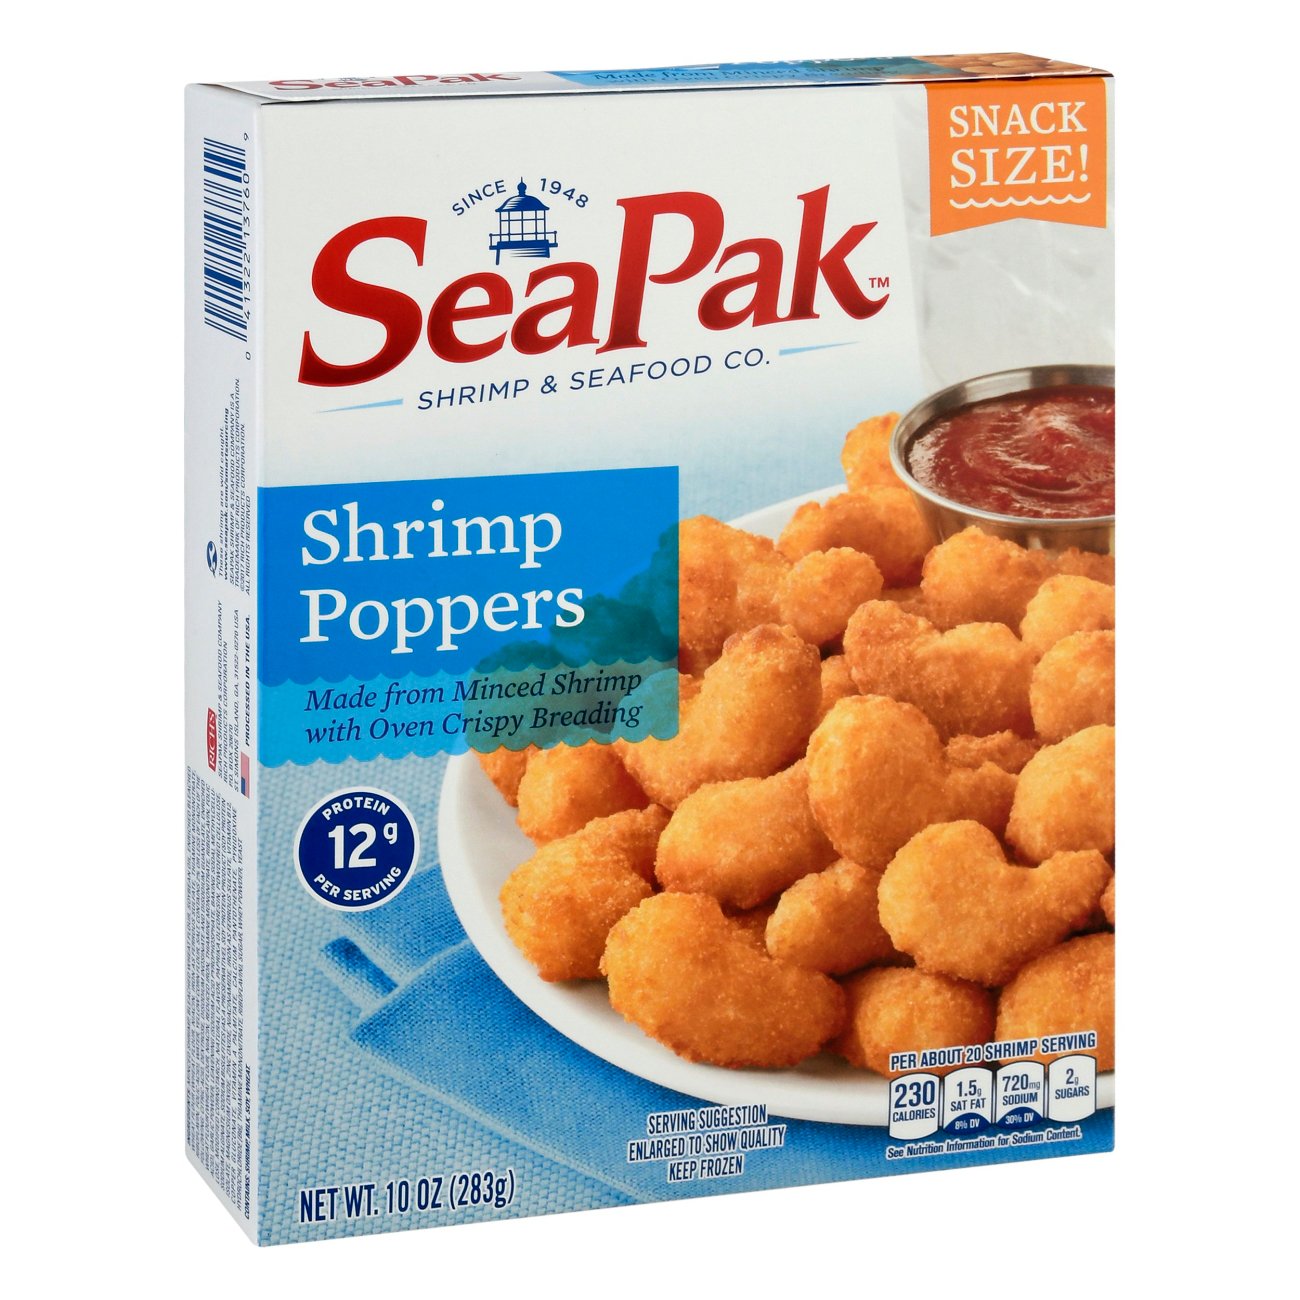 Saltwater Shrimp Poppers – Eggman Flies & Supplies